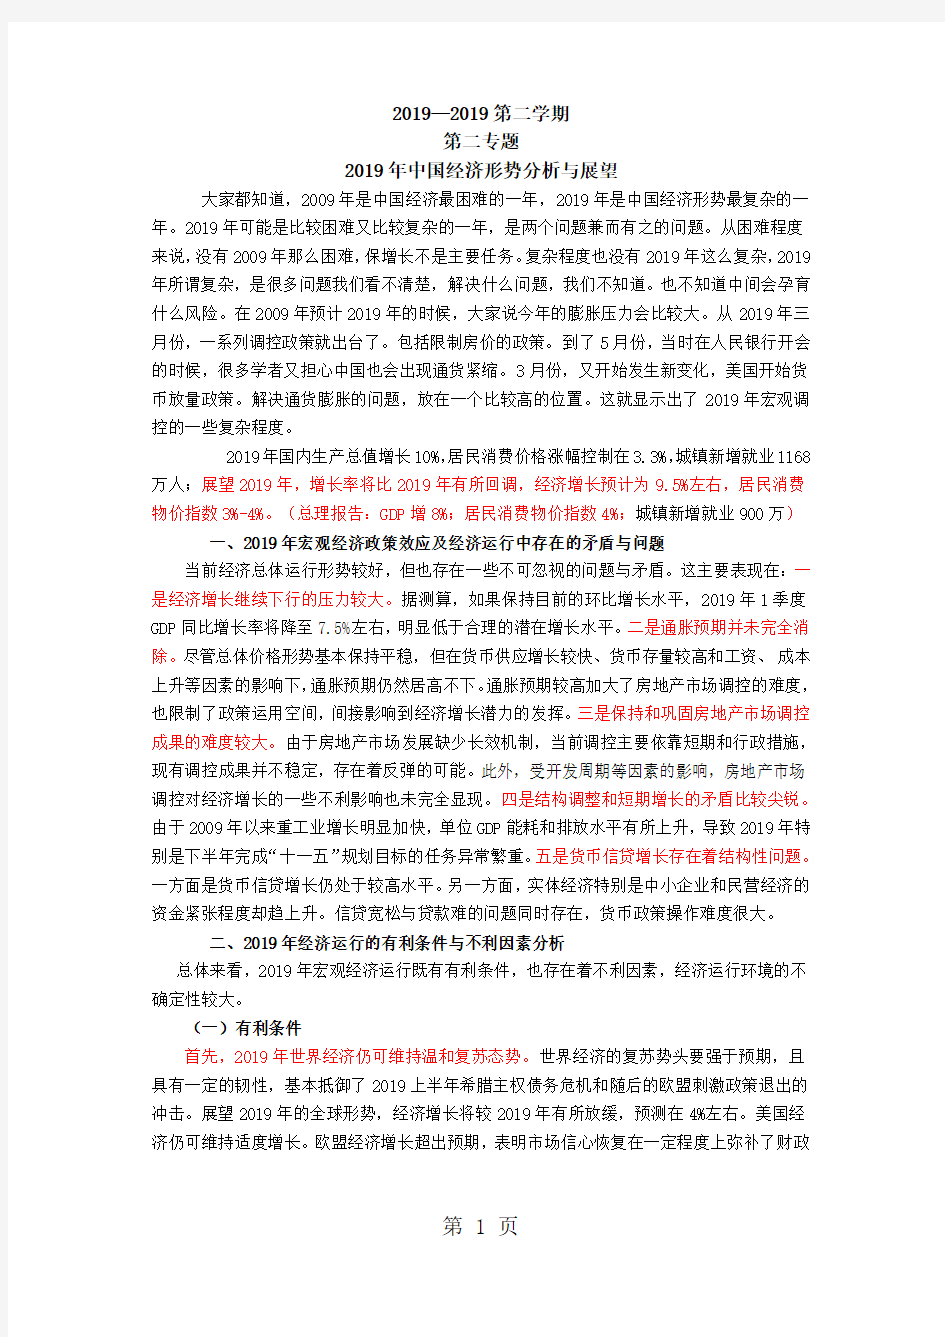 2019年中国经济形势共10页文档